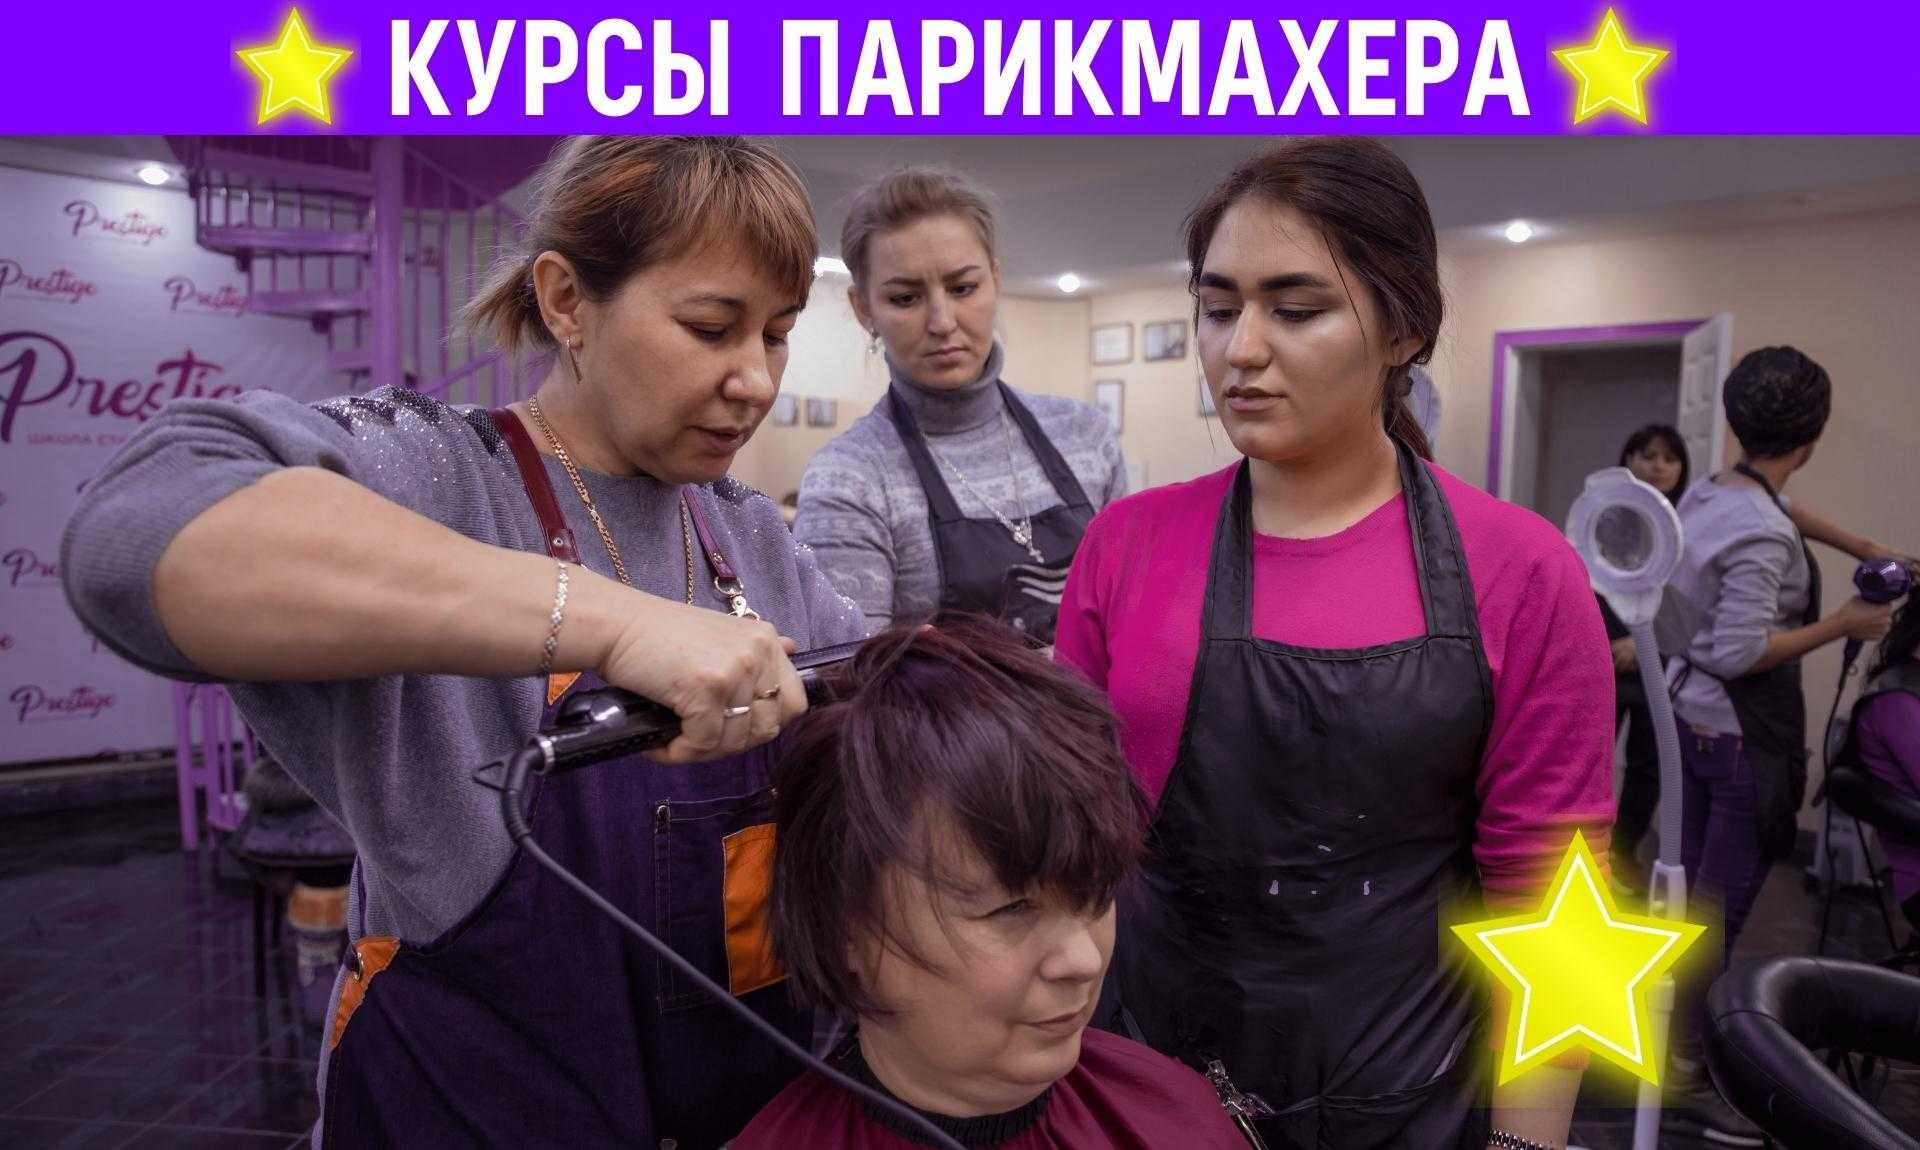 ‼️Курсы Парикмахеров‼️ в Ташкенте. Парикмахерские курсы с нуля